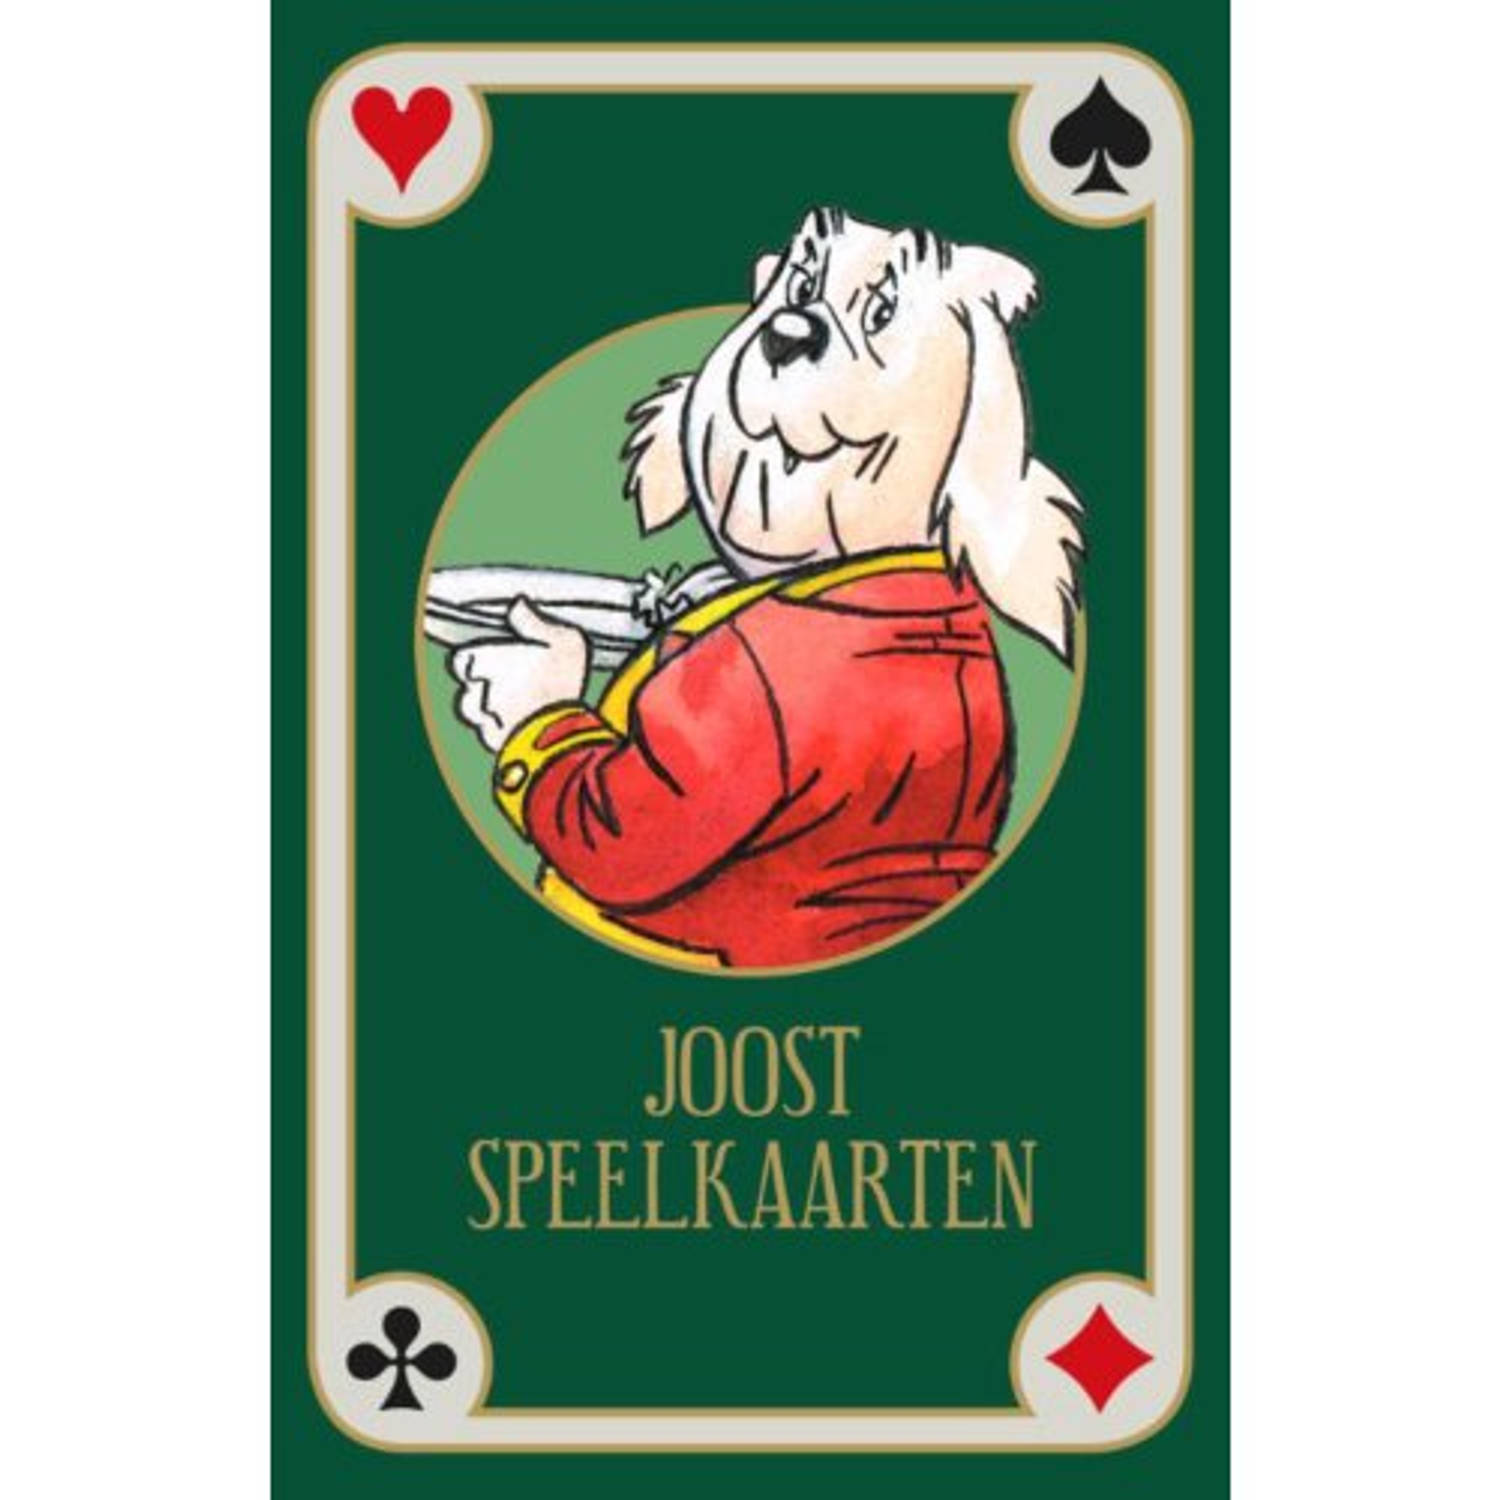 Joost speelkaarten - (ISBN:9789492840370)